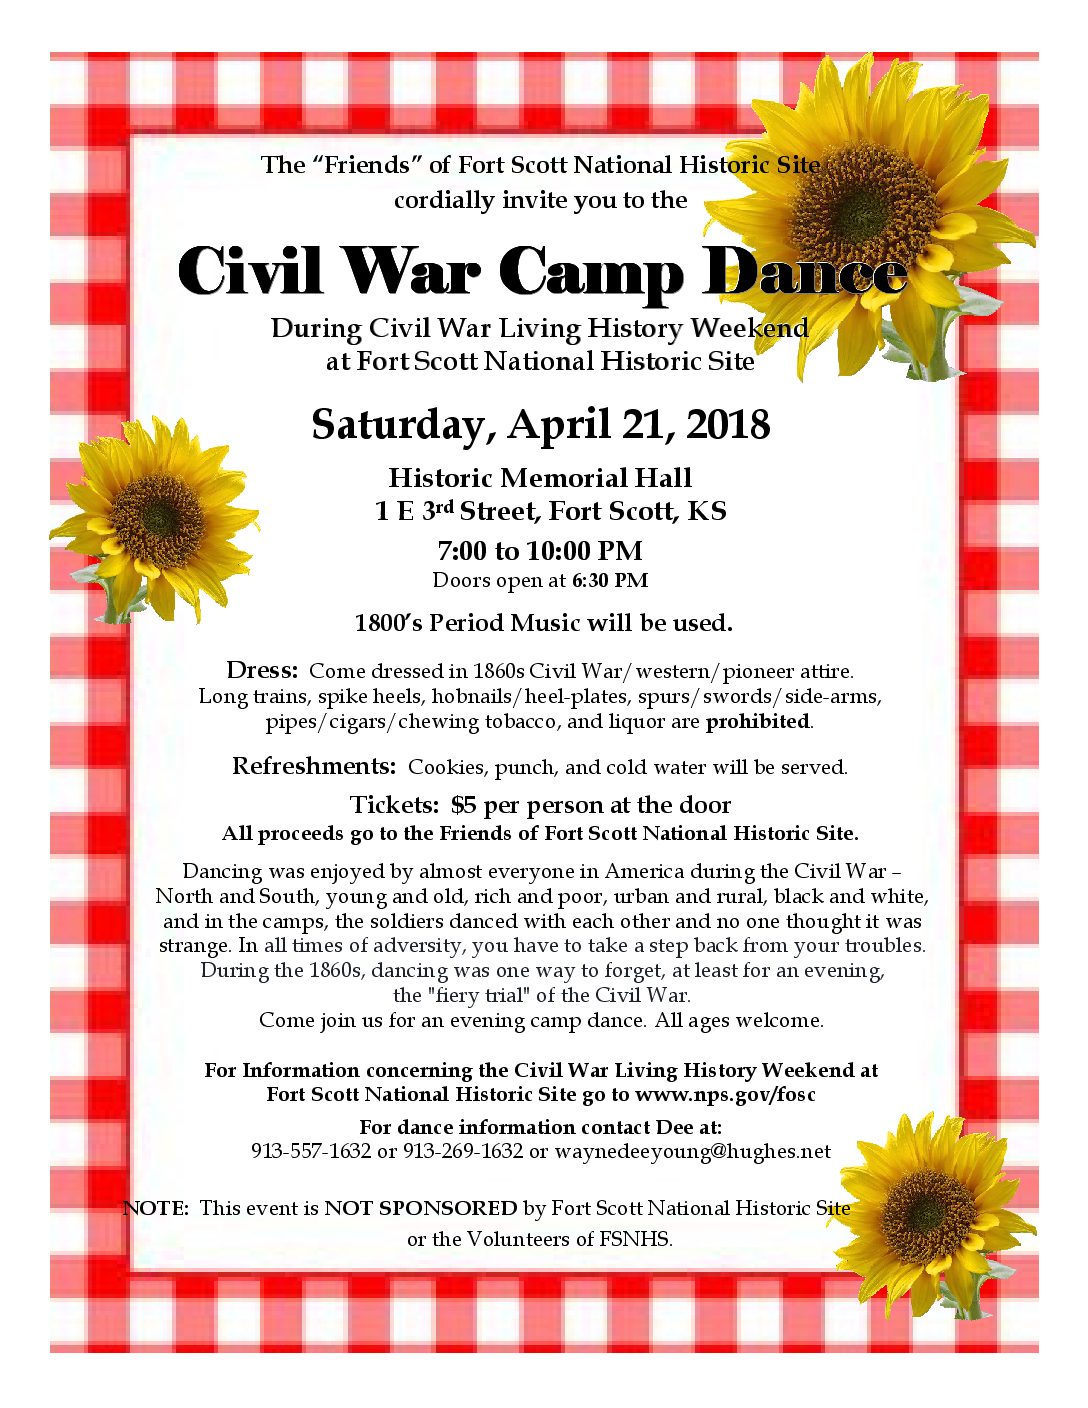 Civil War Dance This Saturday